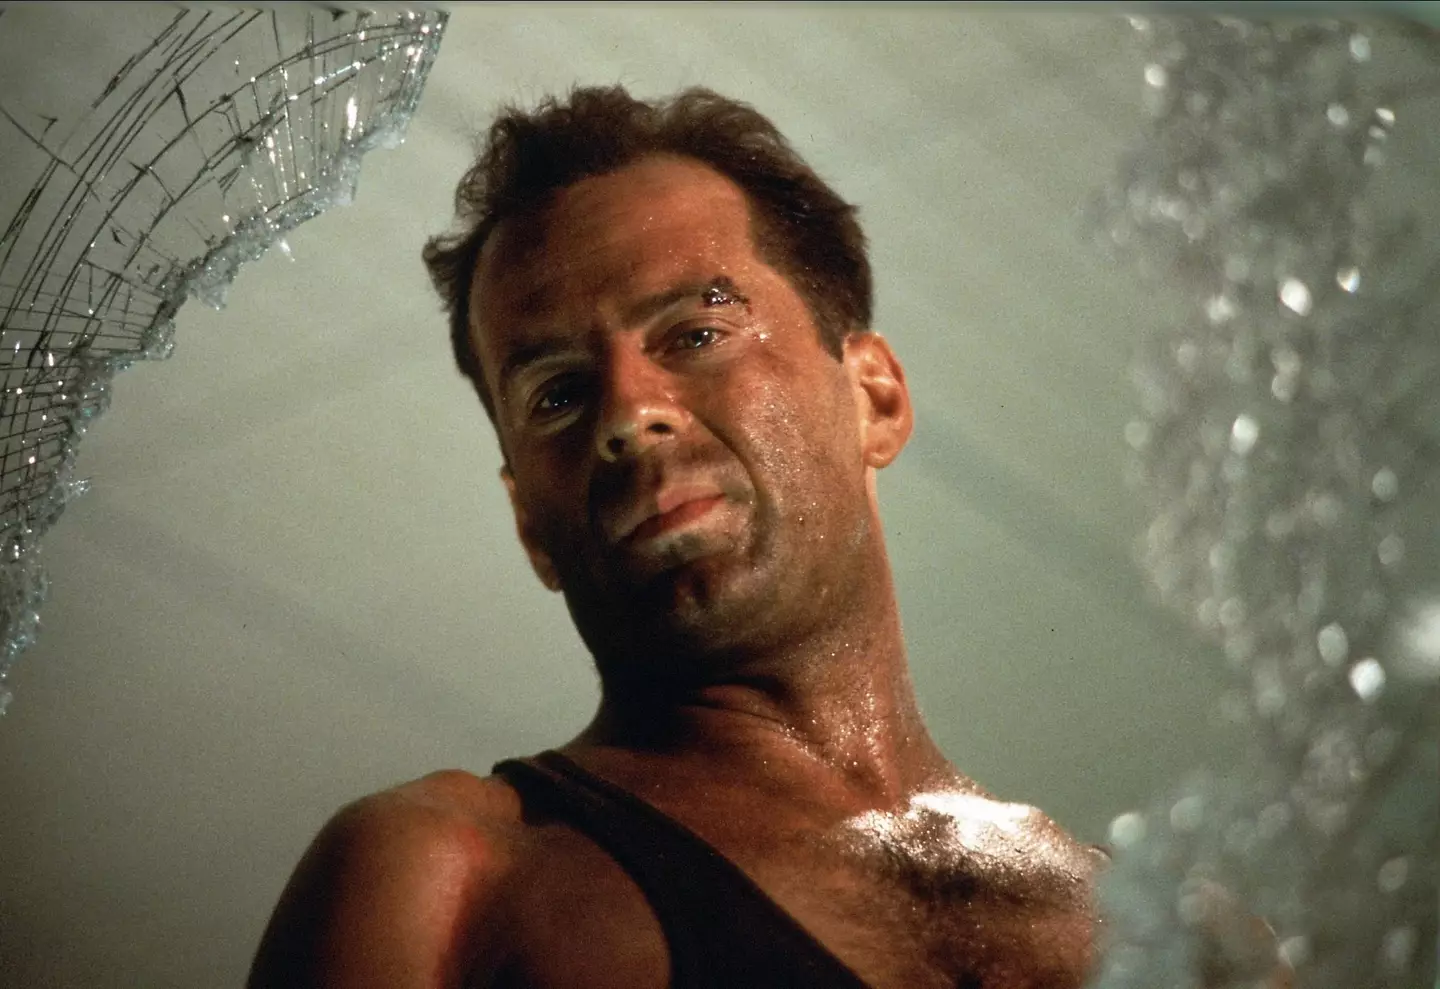 Bruce Willis as John McClane in Die Hard.